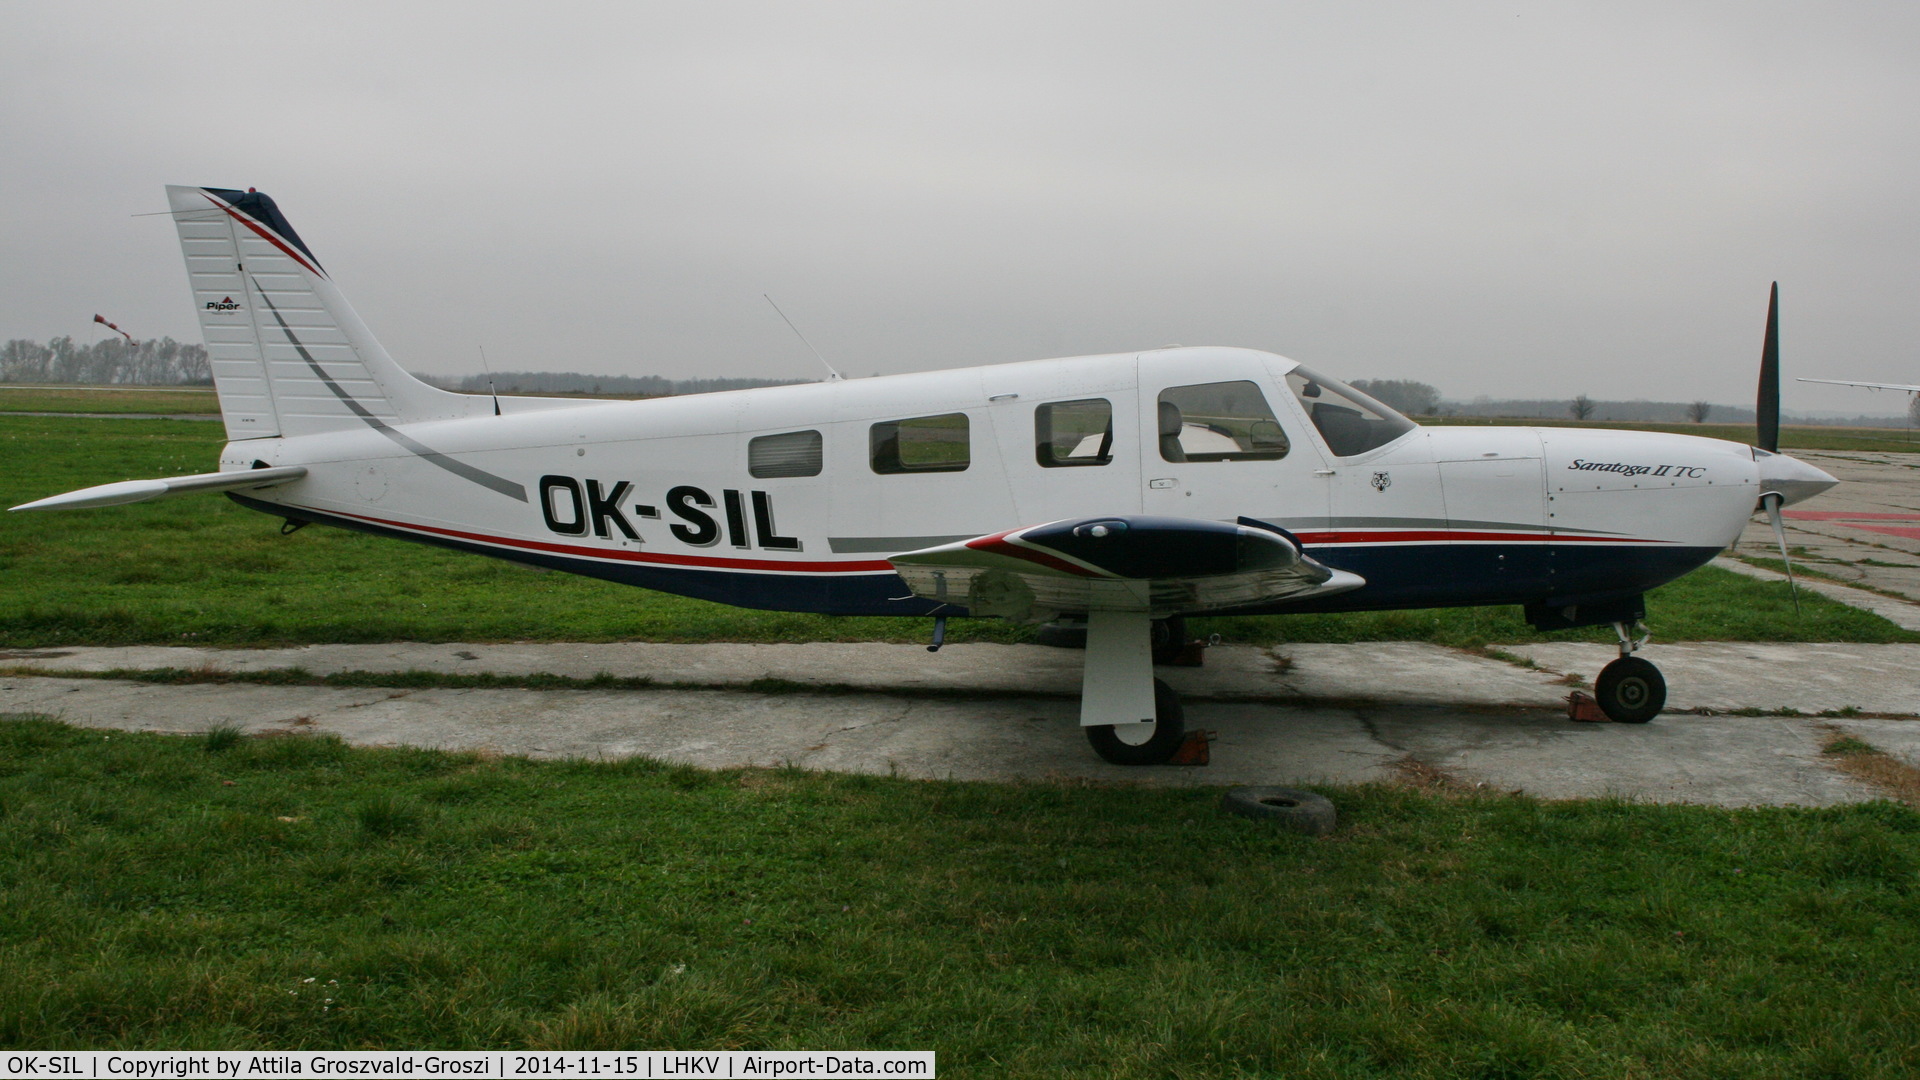 OK-SIL, 2007 Piper PA-32R-301T Turbo Saratoga C/N 3257454, Kaposújlak Airport, Hungary